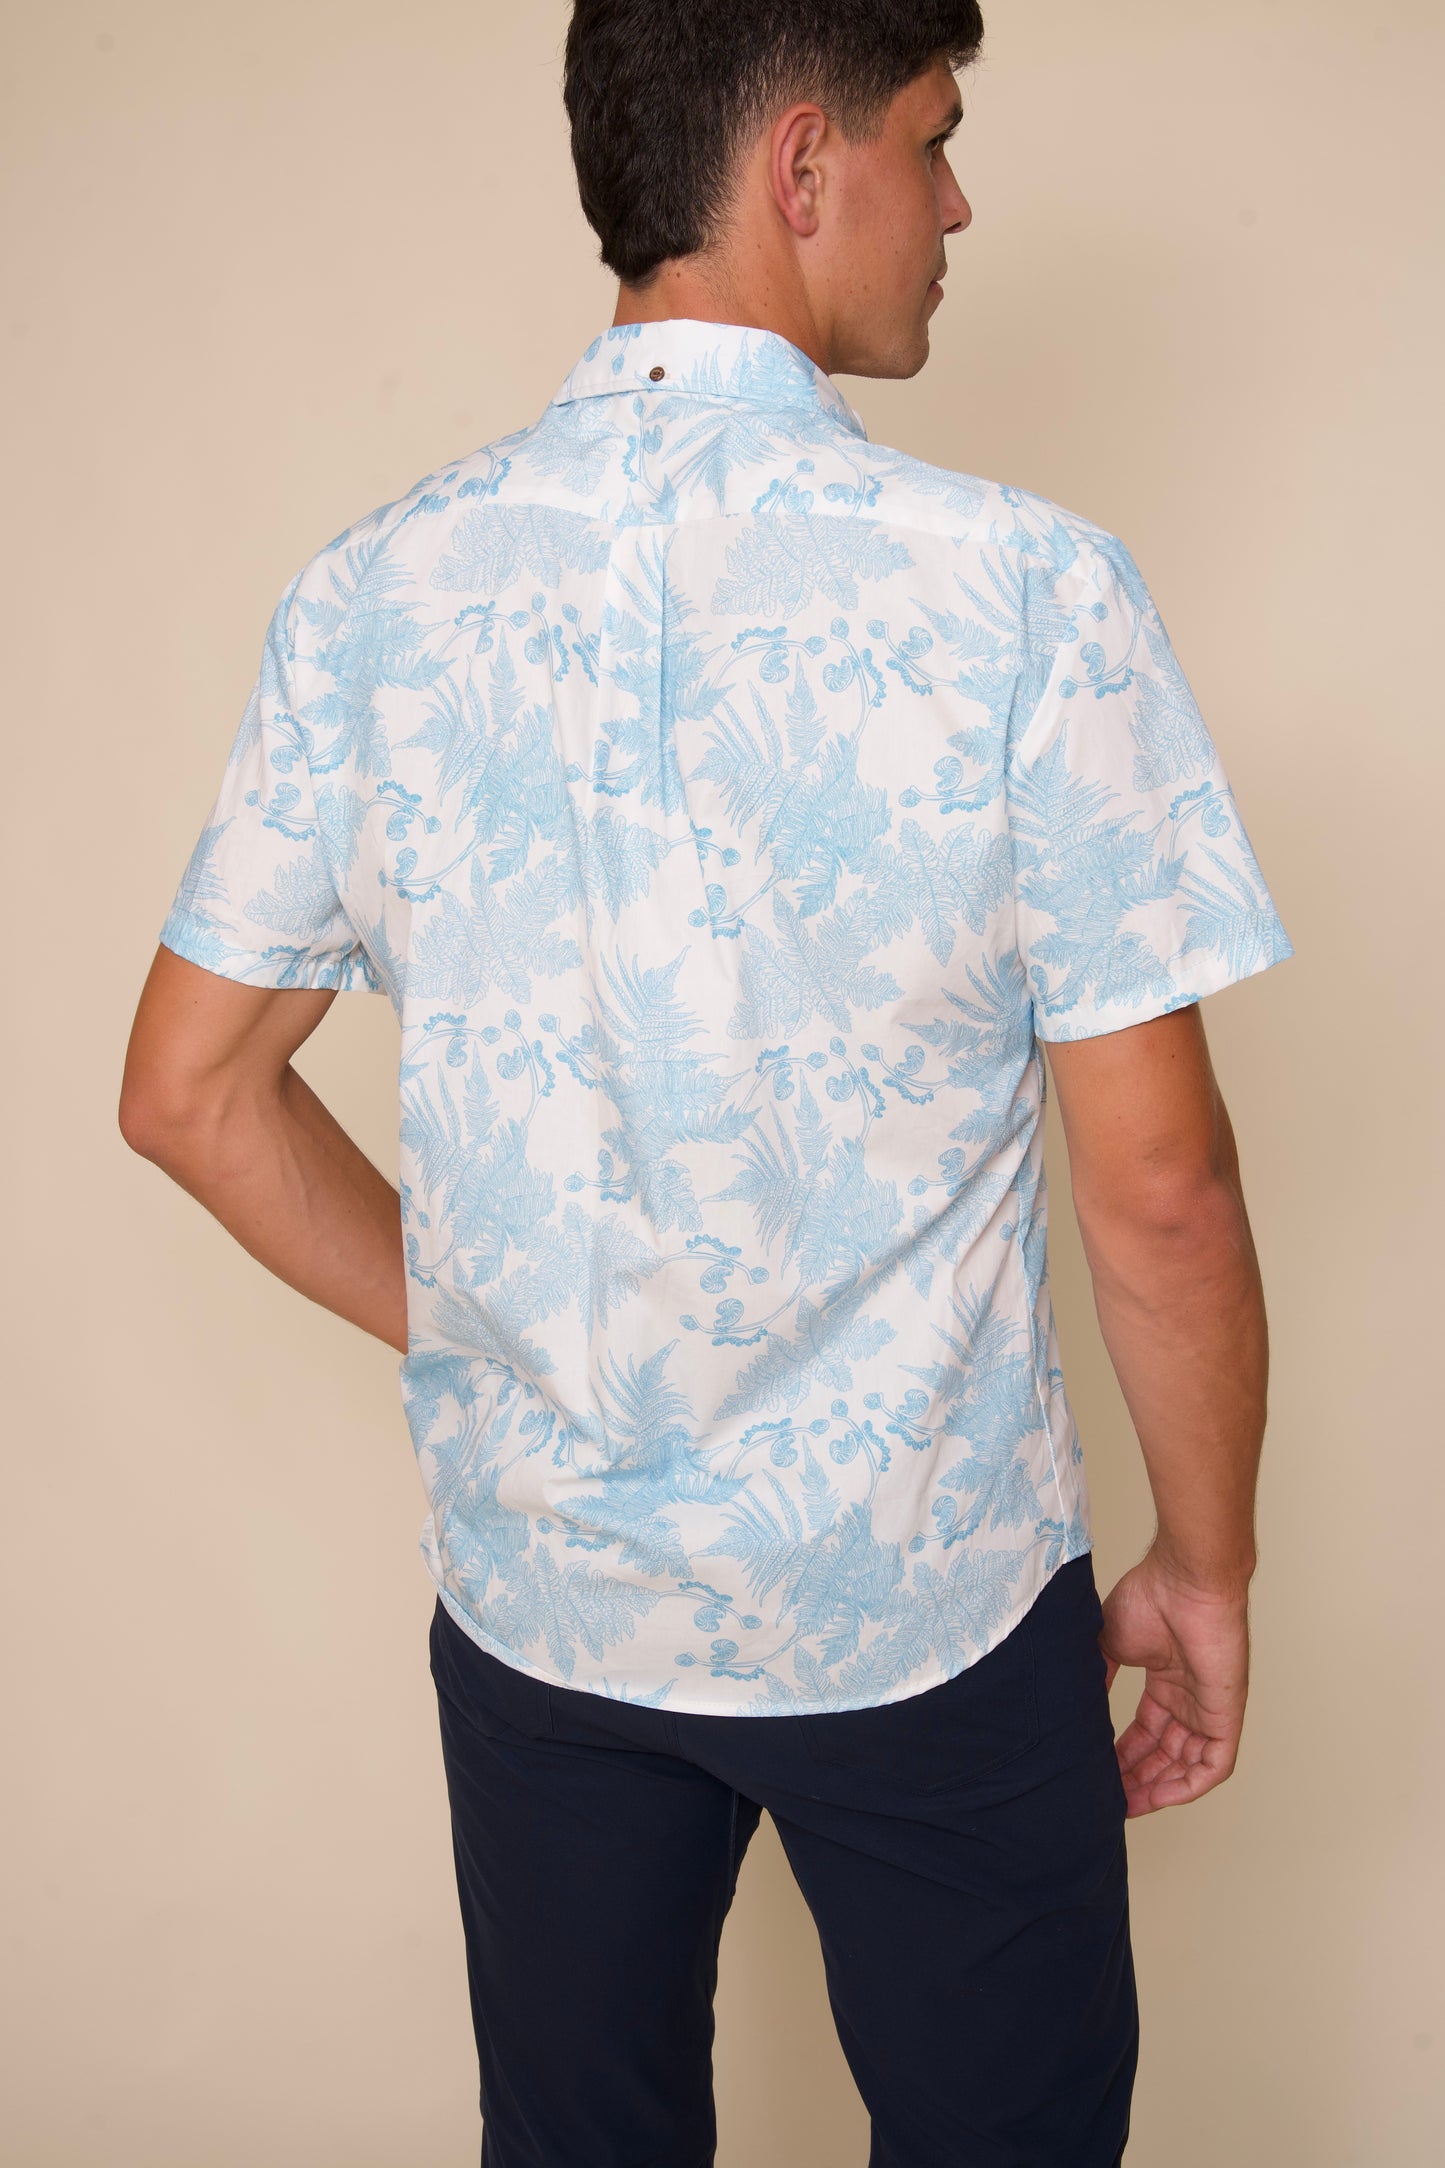 Hāpuʻu Tree Fern Blue on White Aloha Shirt